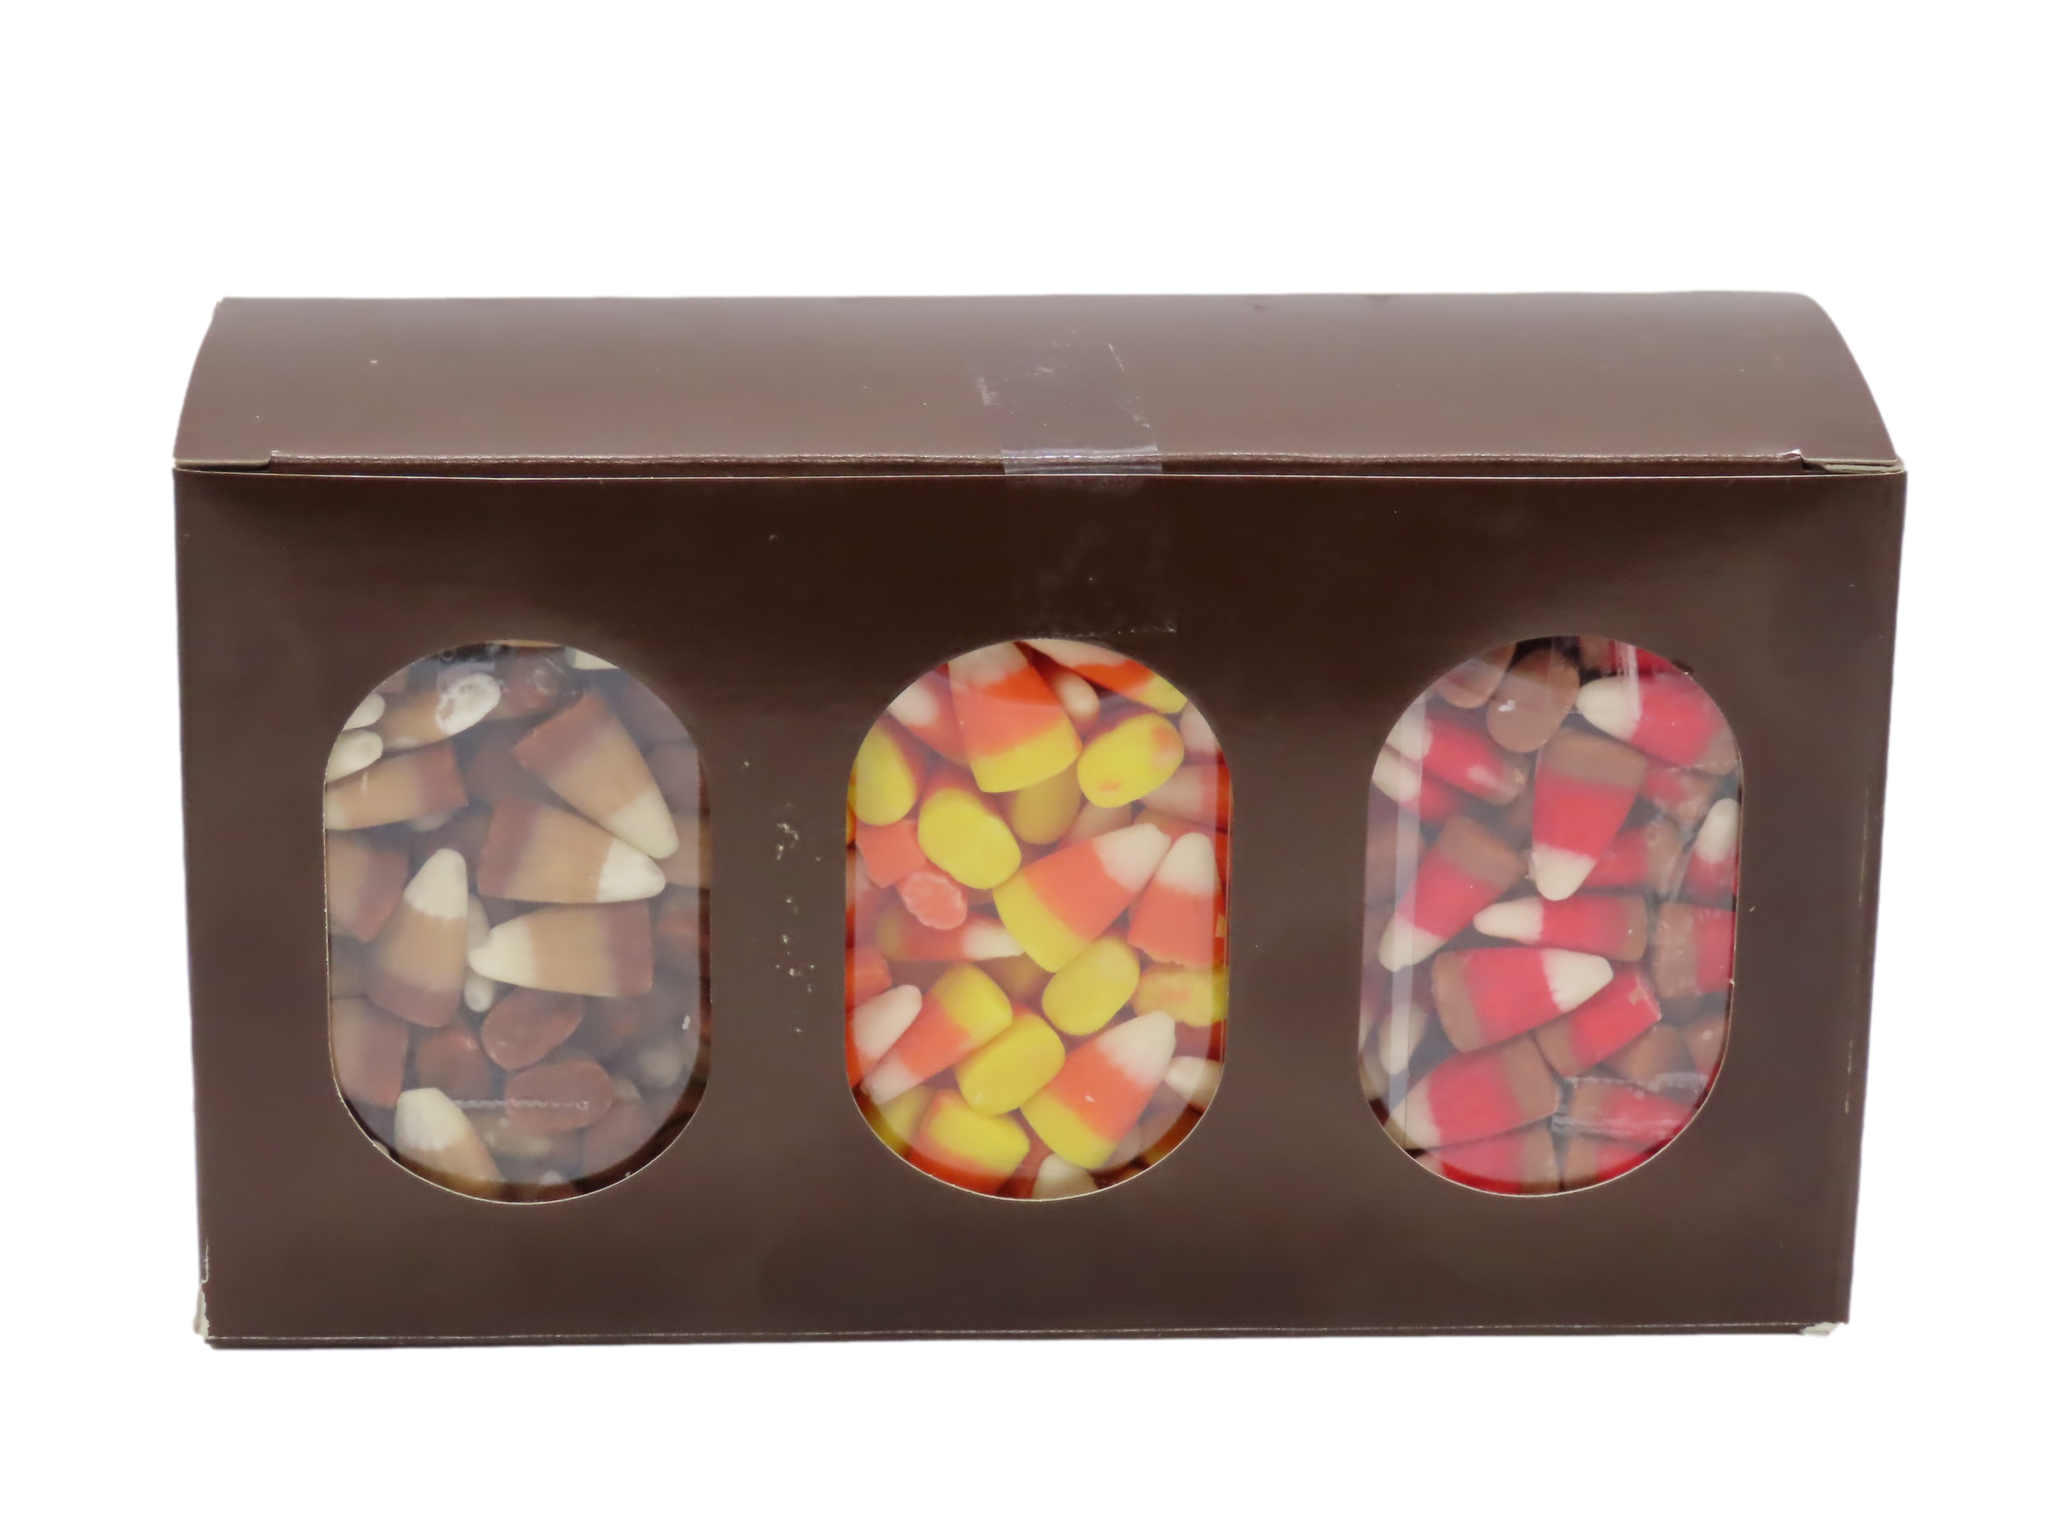 Candy Corn Sampler Box